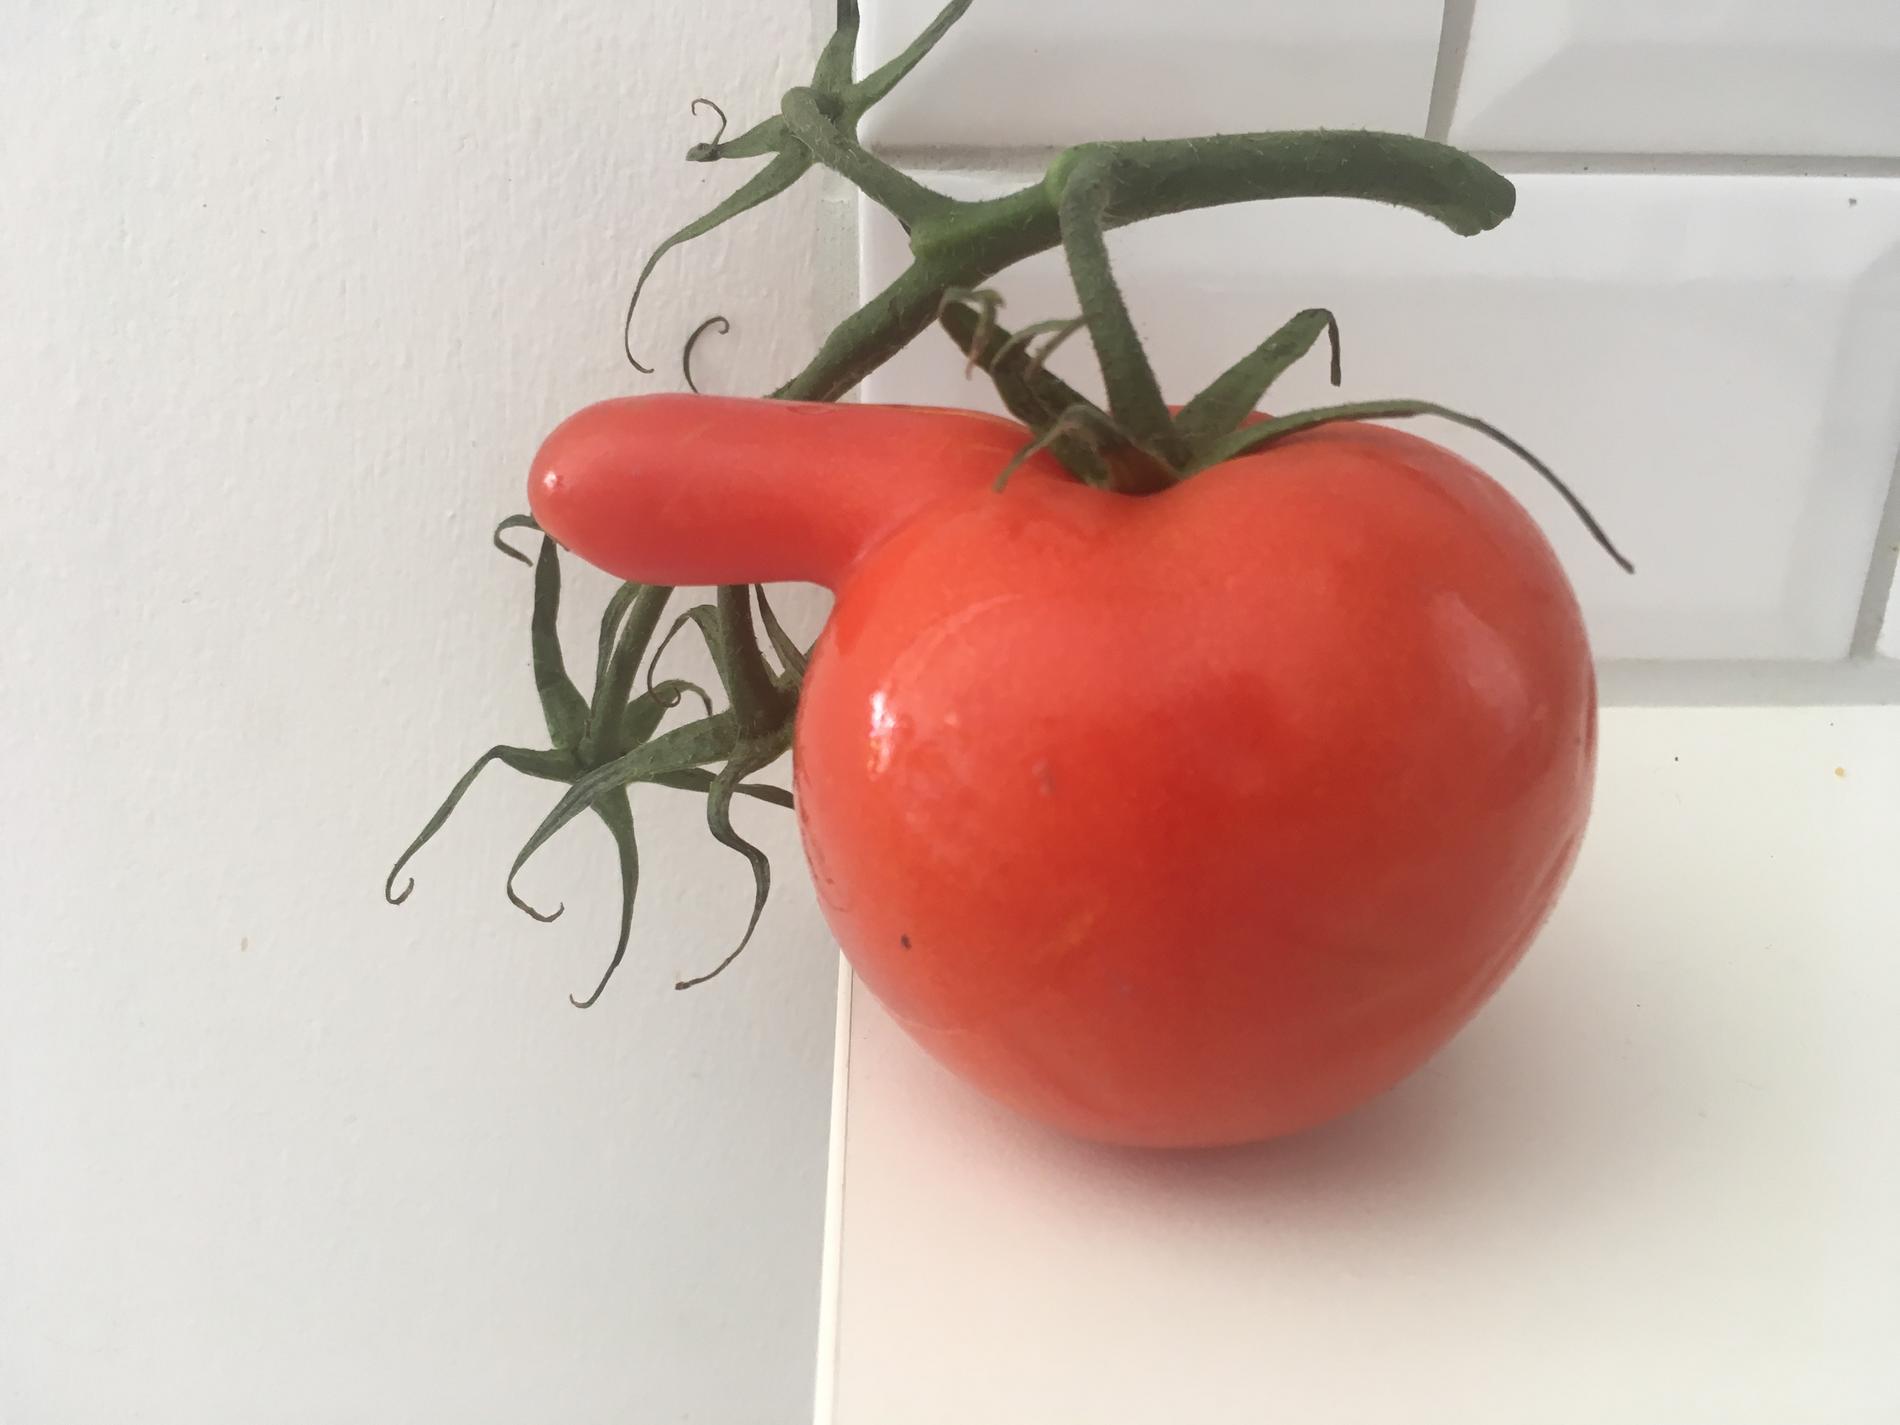 De fick sig ett gott skratt när de såg hur tomaten såg ut.